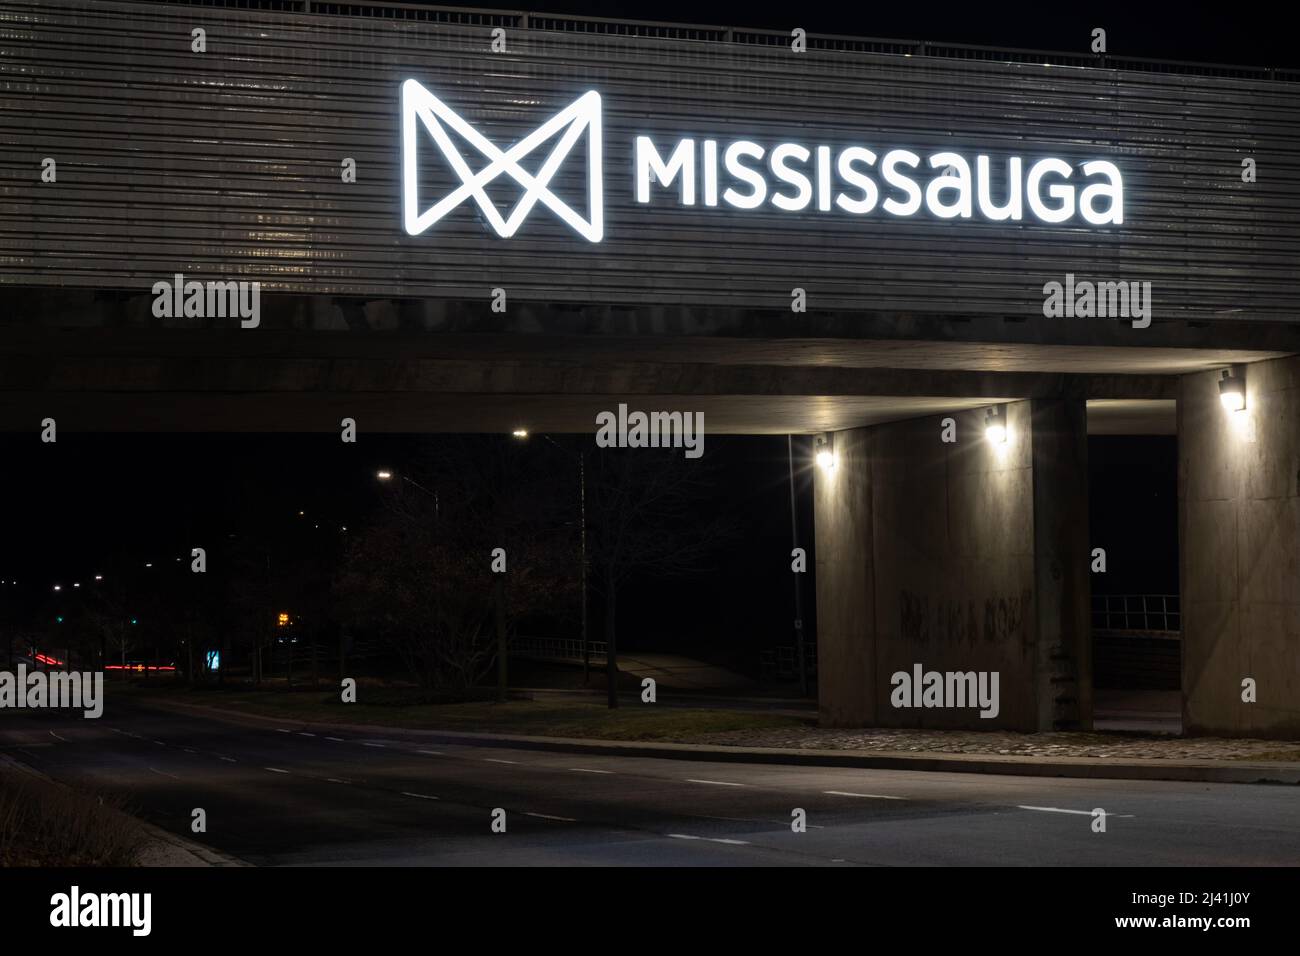 Le logo de la ville de Mississauga est visible sur un passage souterrain du centre-ville de Mississauga. Banque D'Images